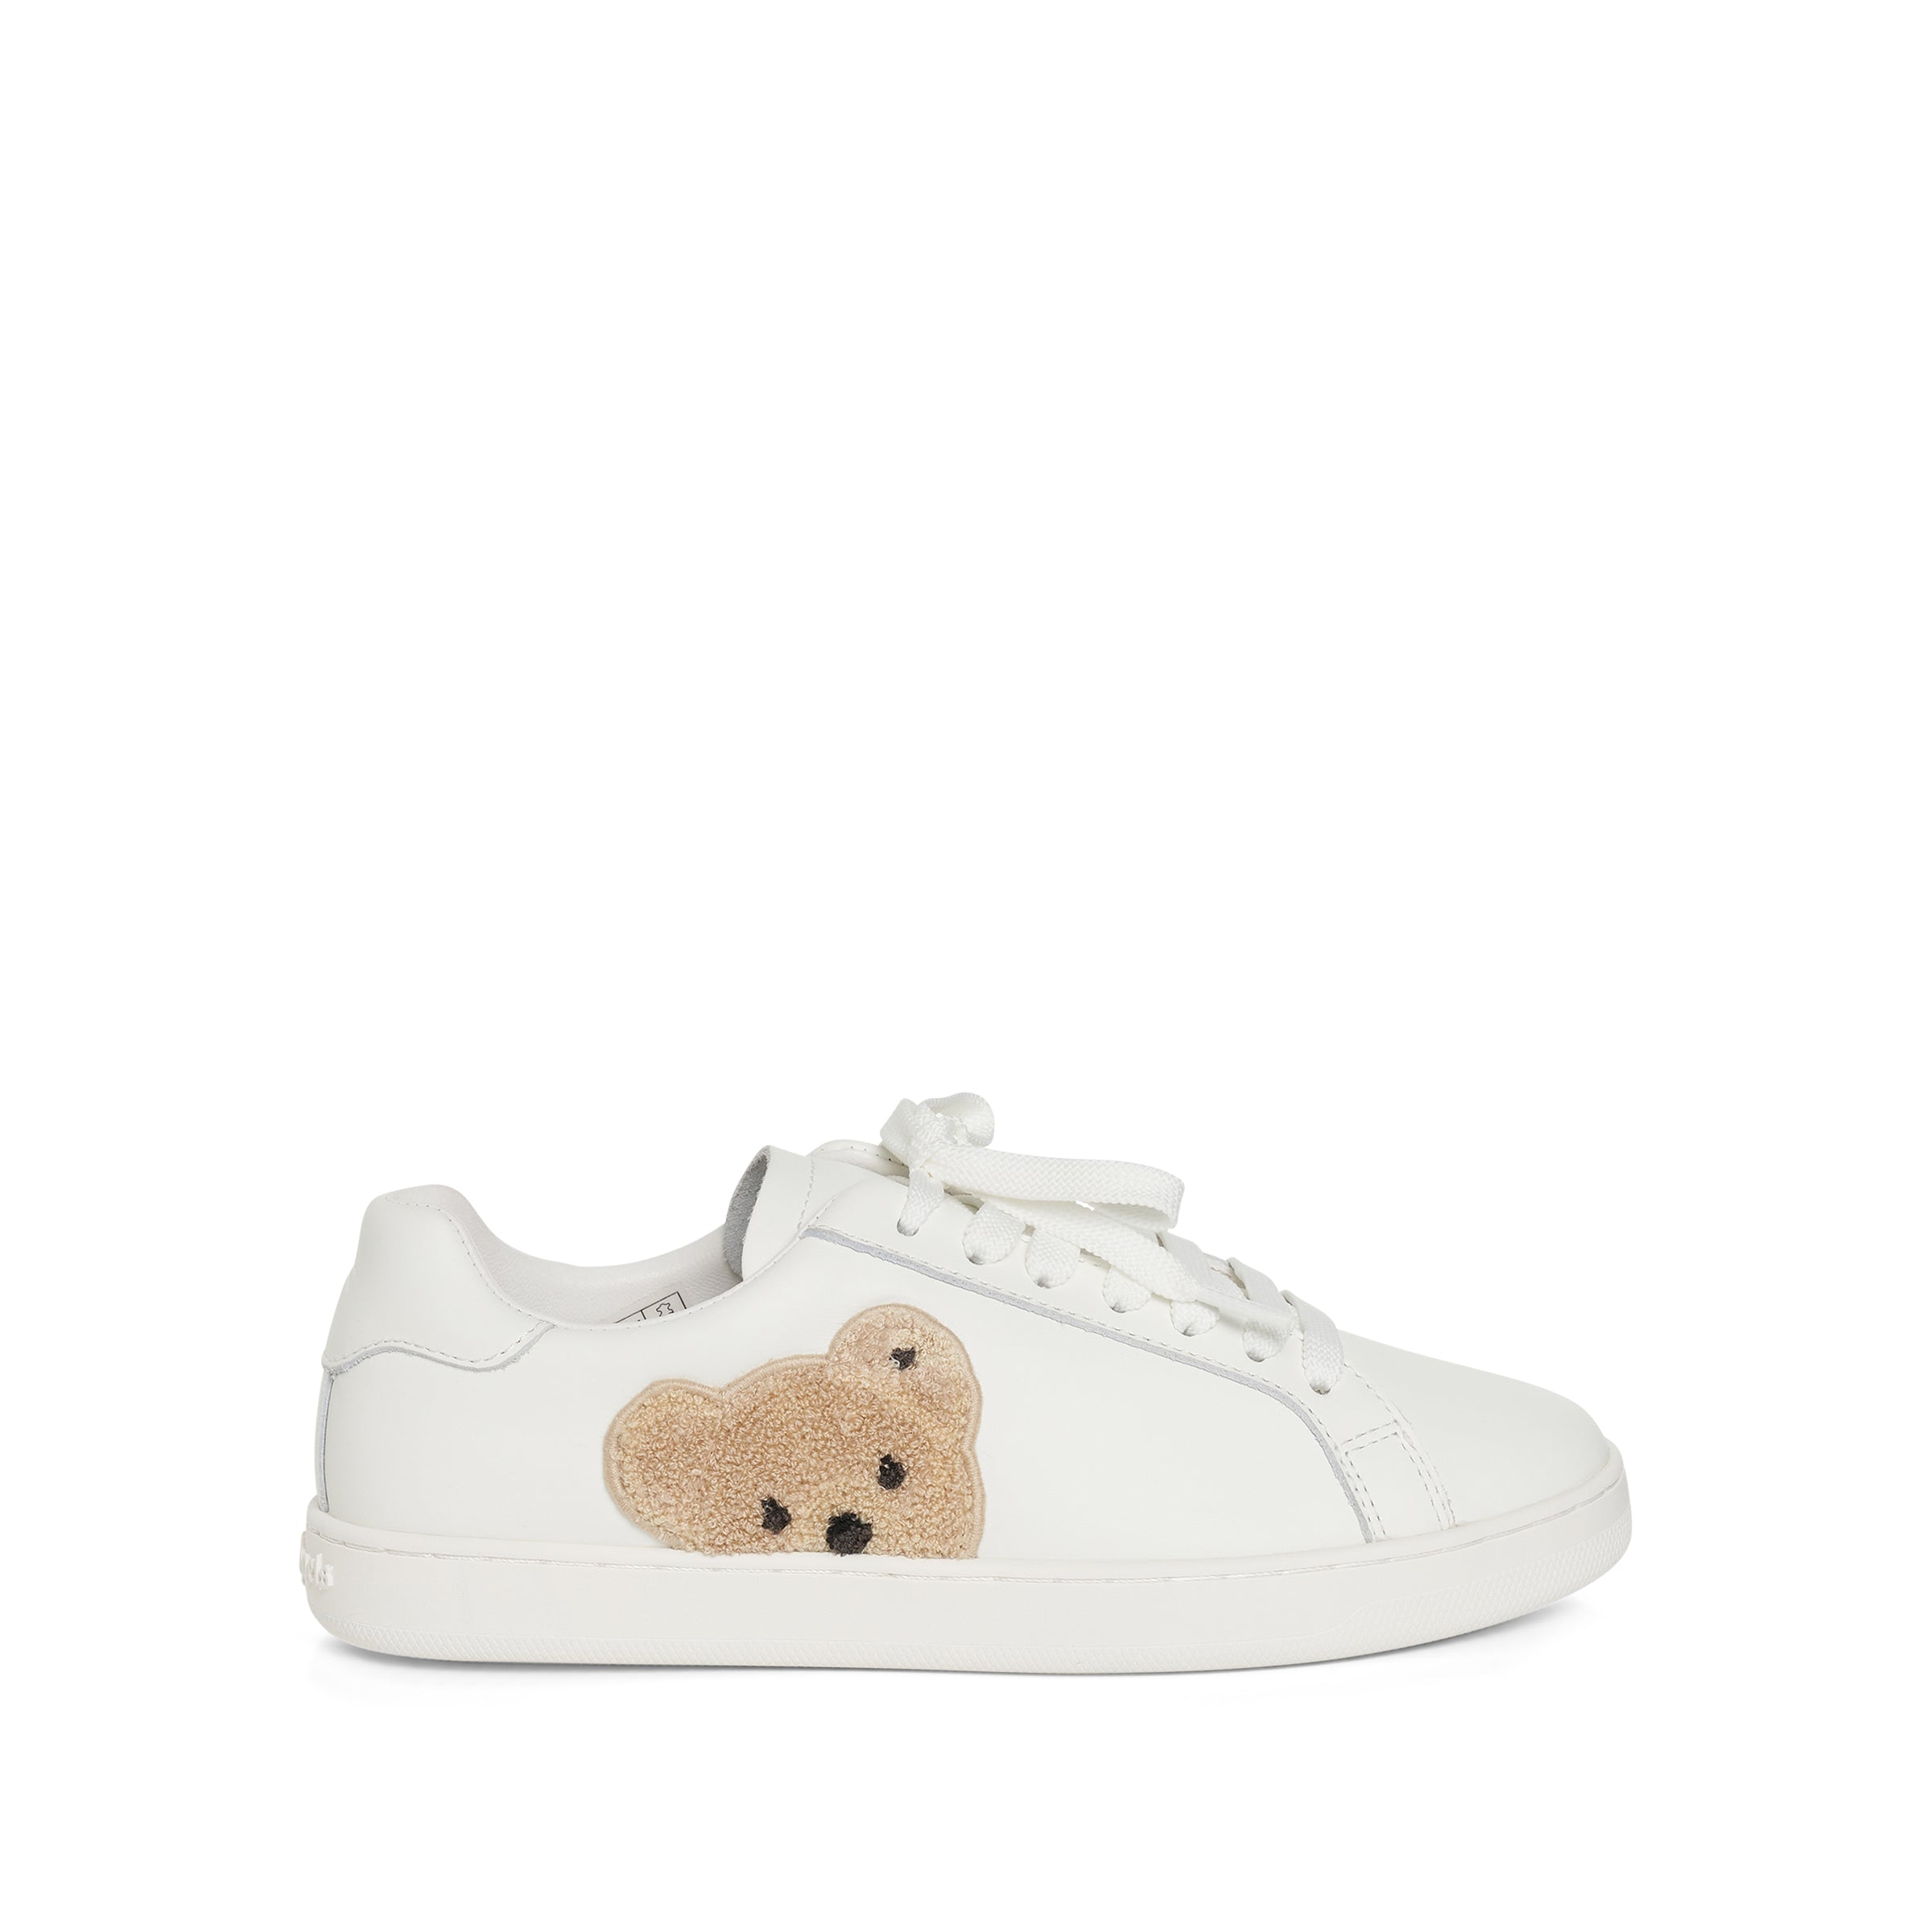 New Teddy Bear Tennis Sneaker in White